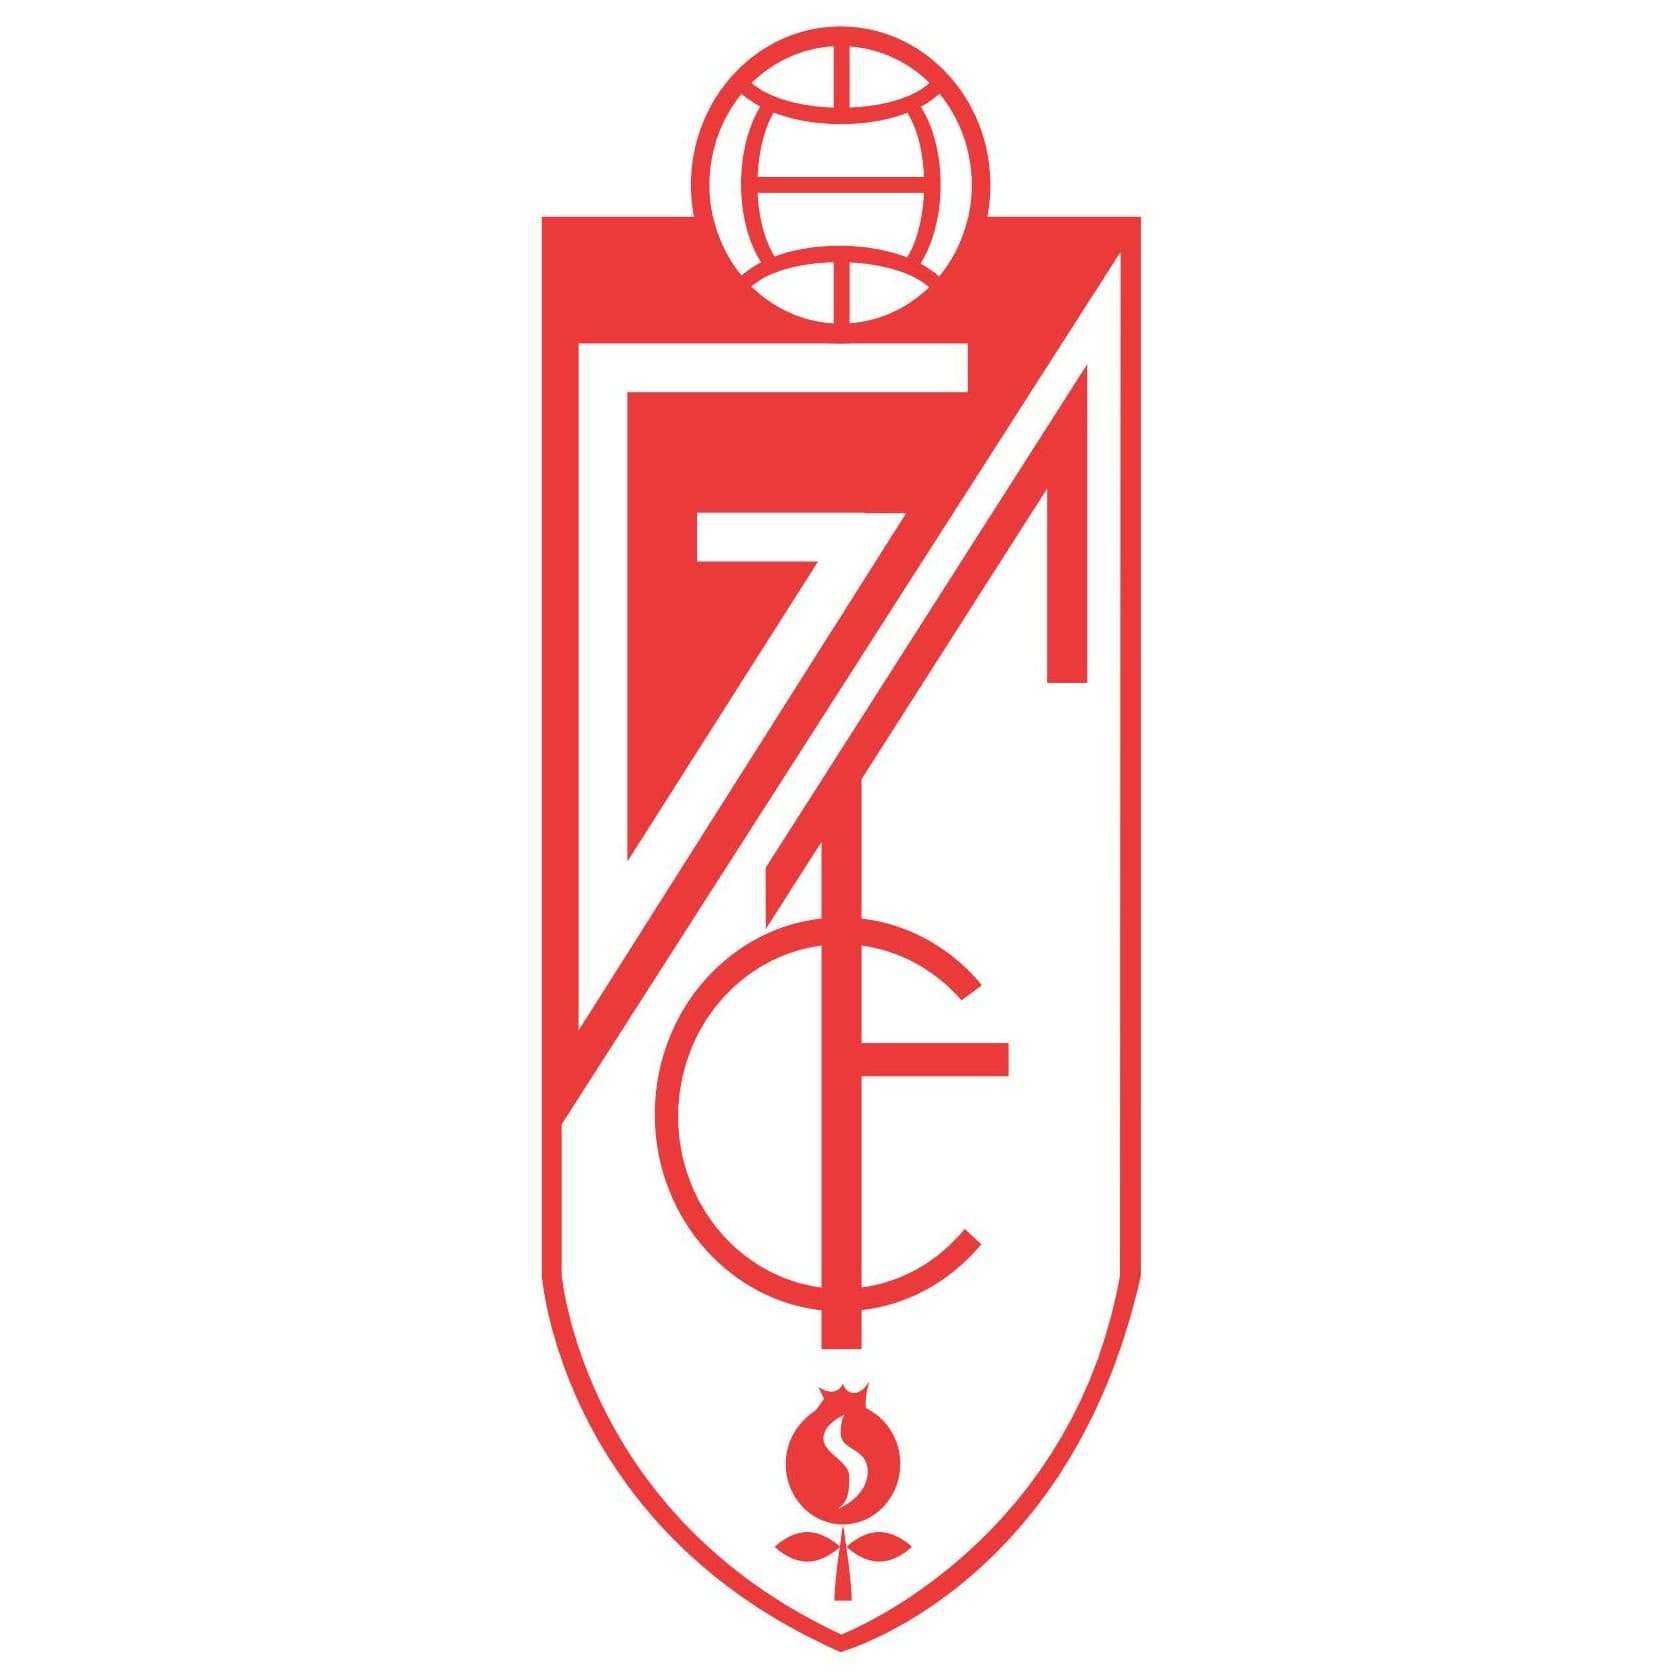 Granada Logo